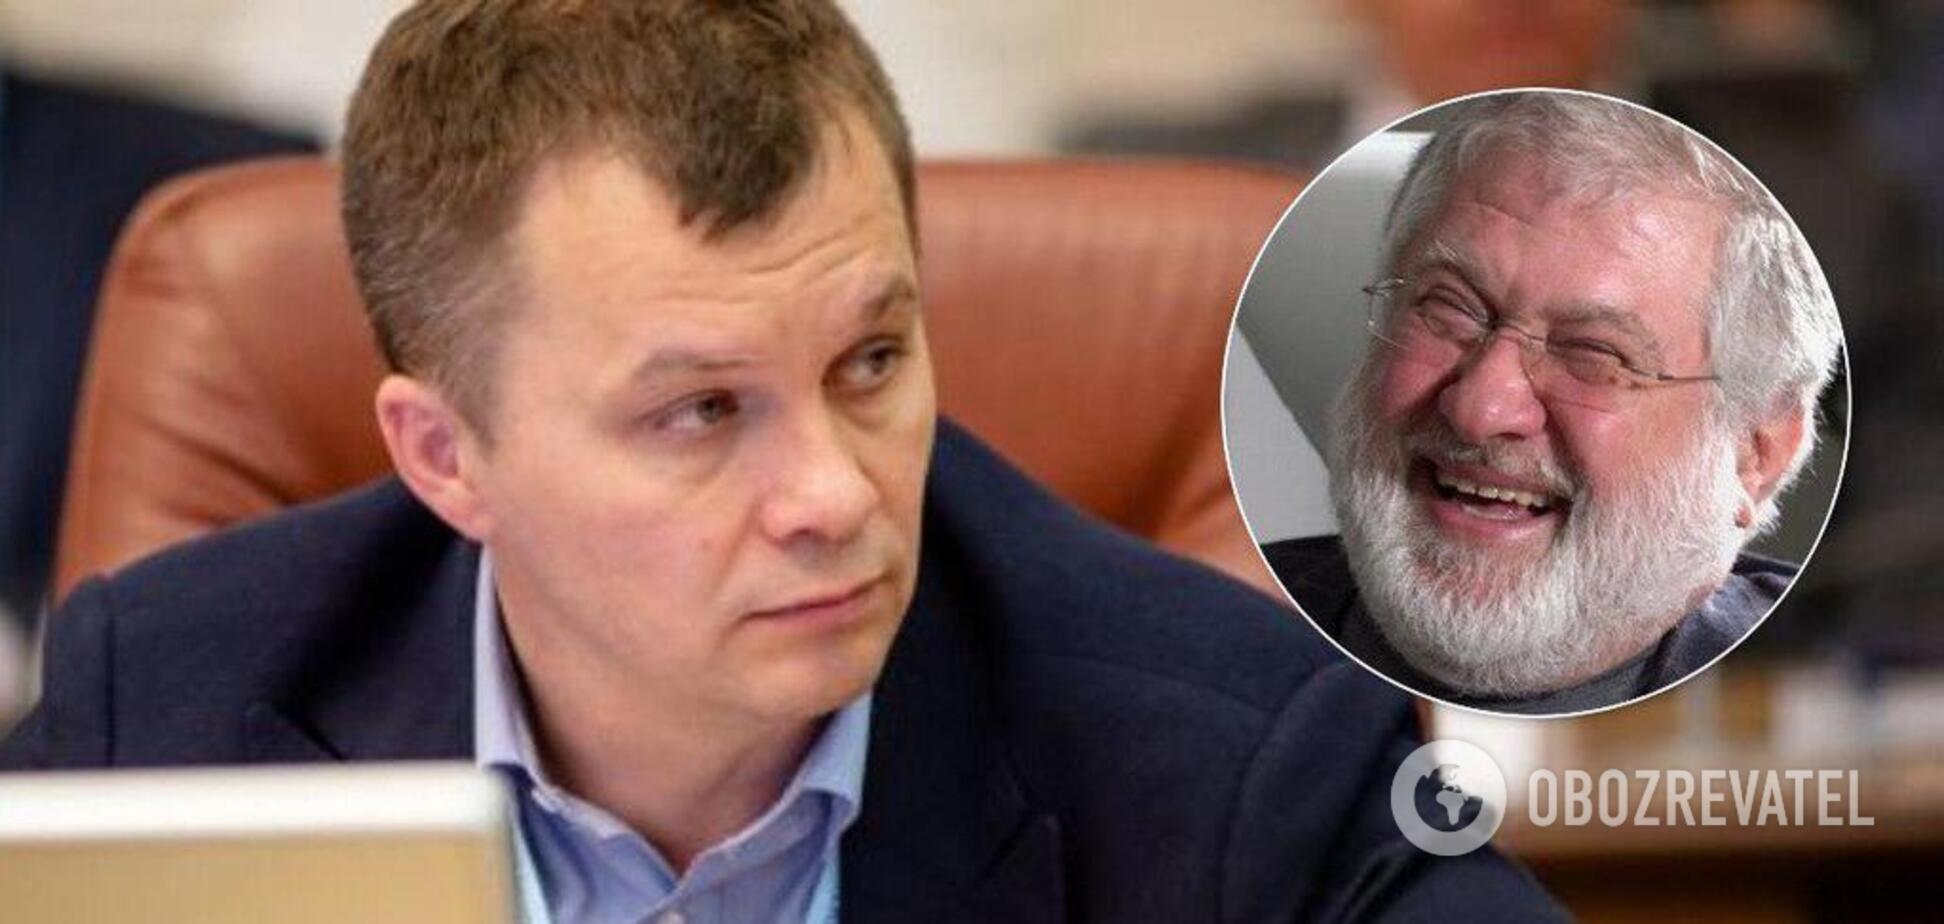 'Я дебил': министр экономики ответил Коломойскому на оскорбление